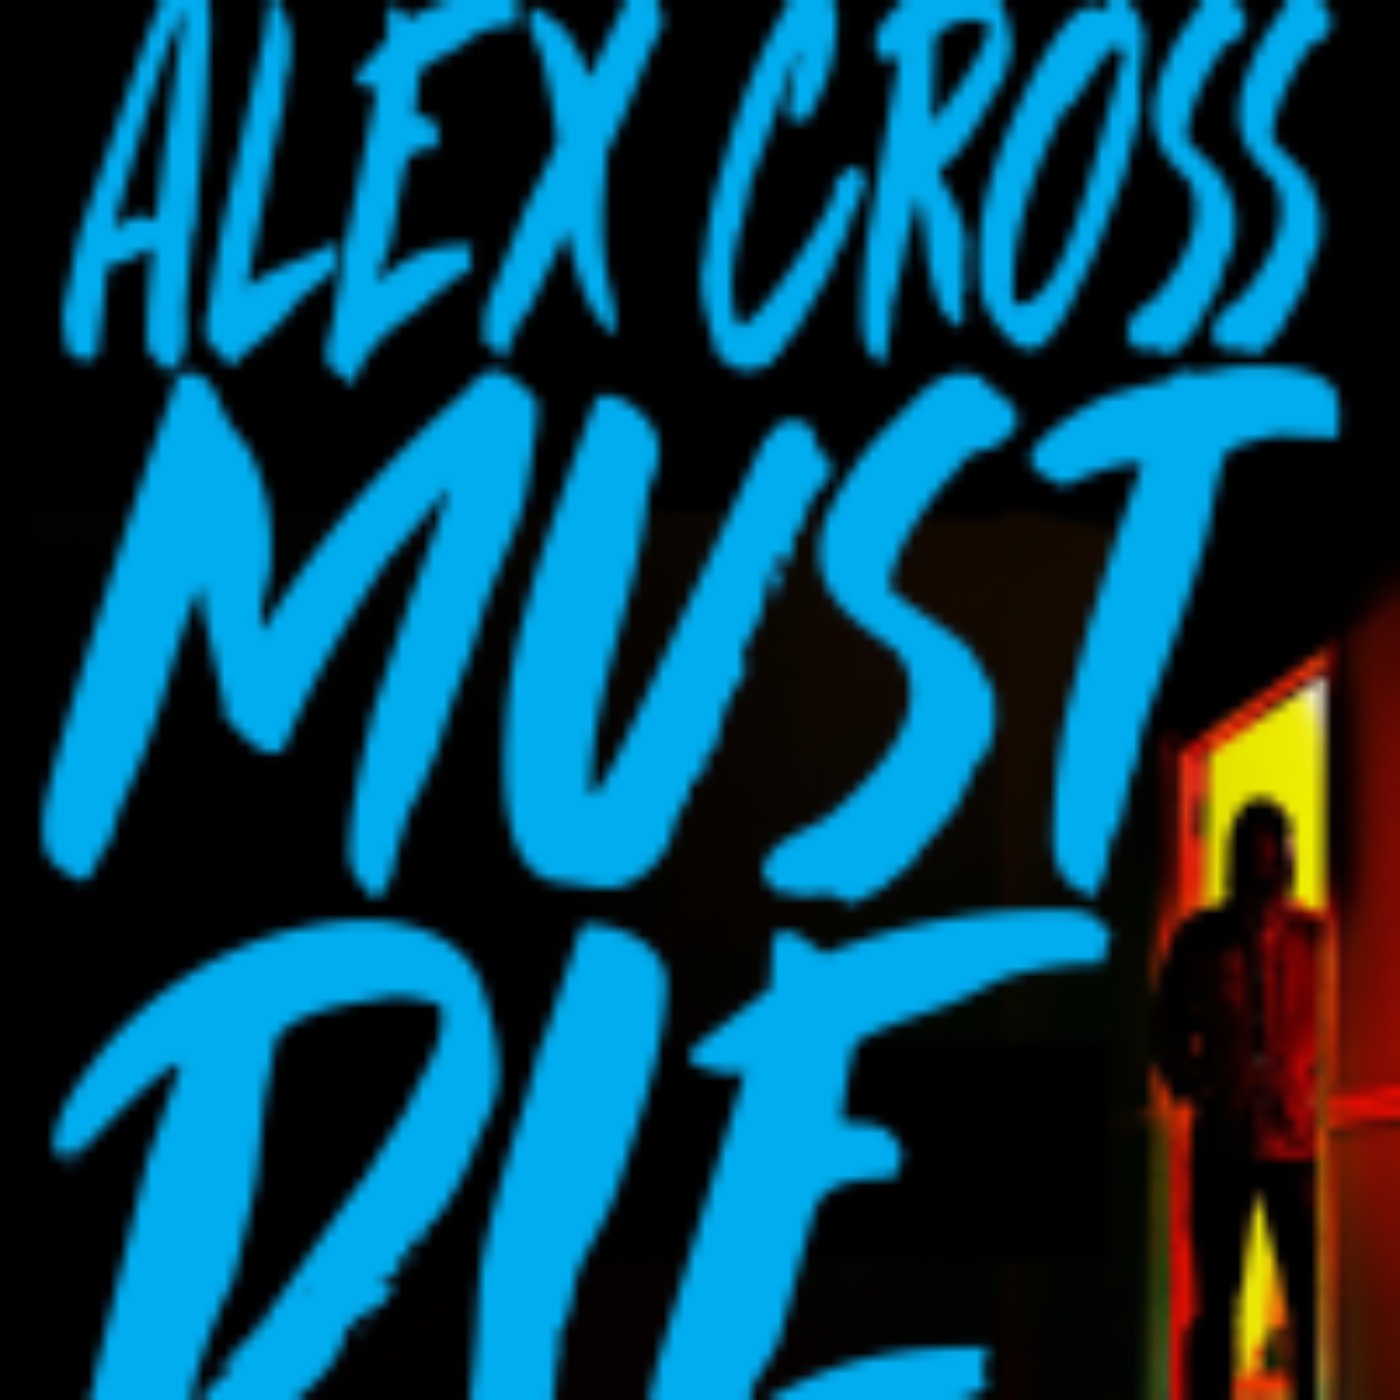 James Patterson - Alex Cross Must Die (Explicit)